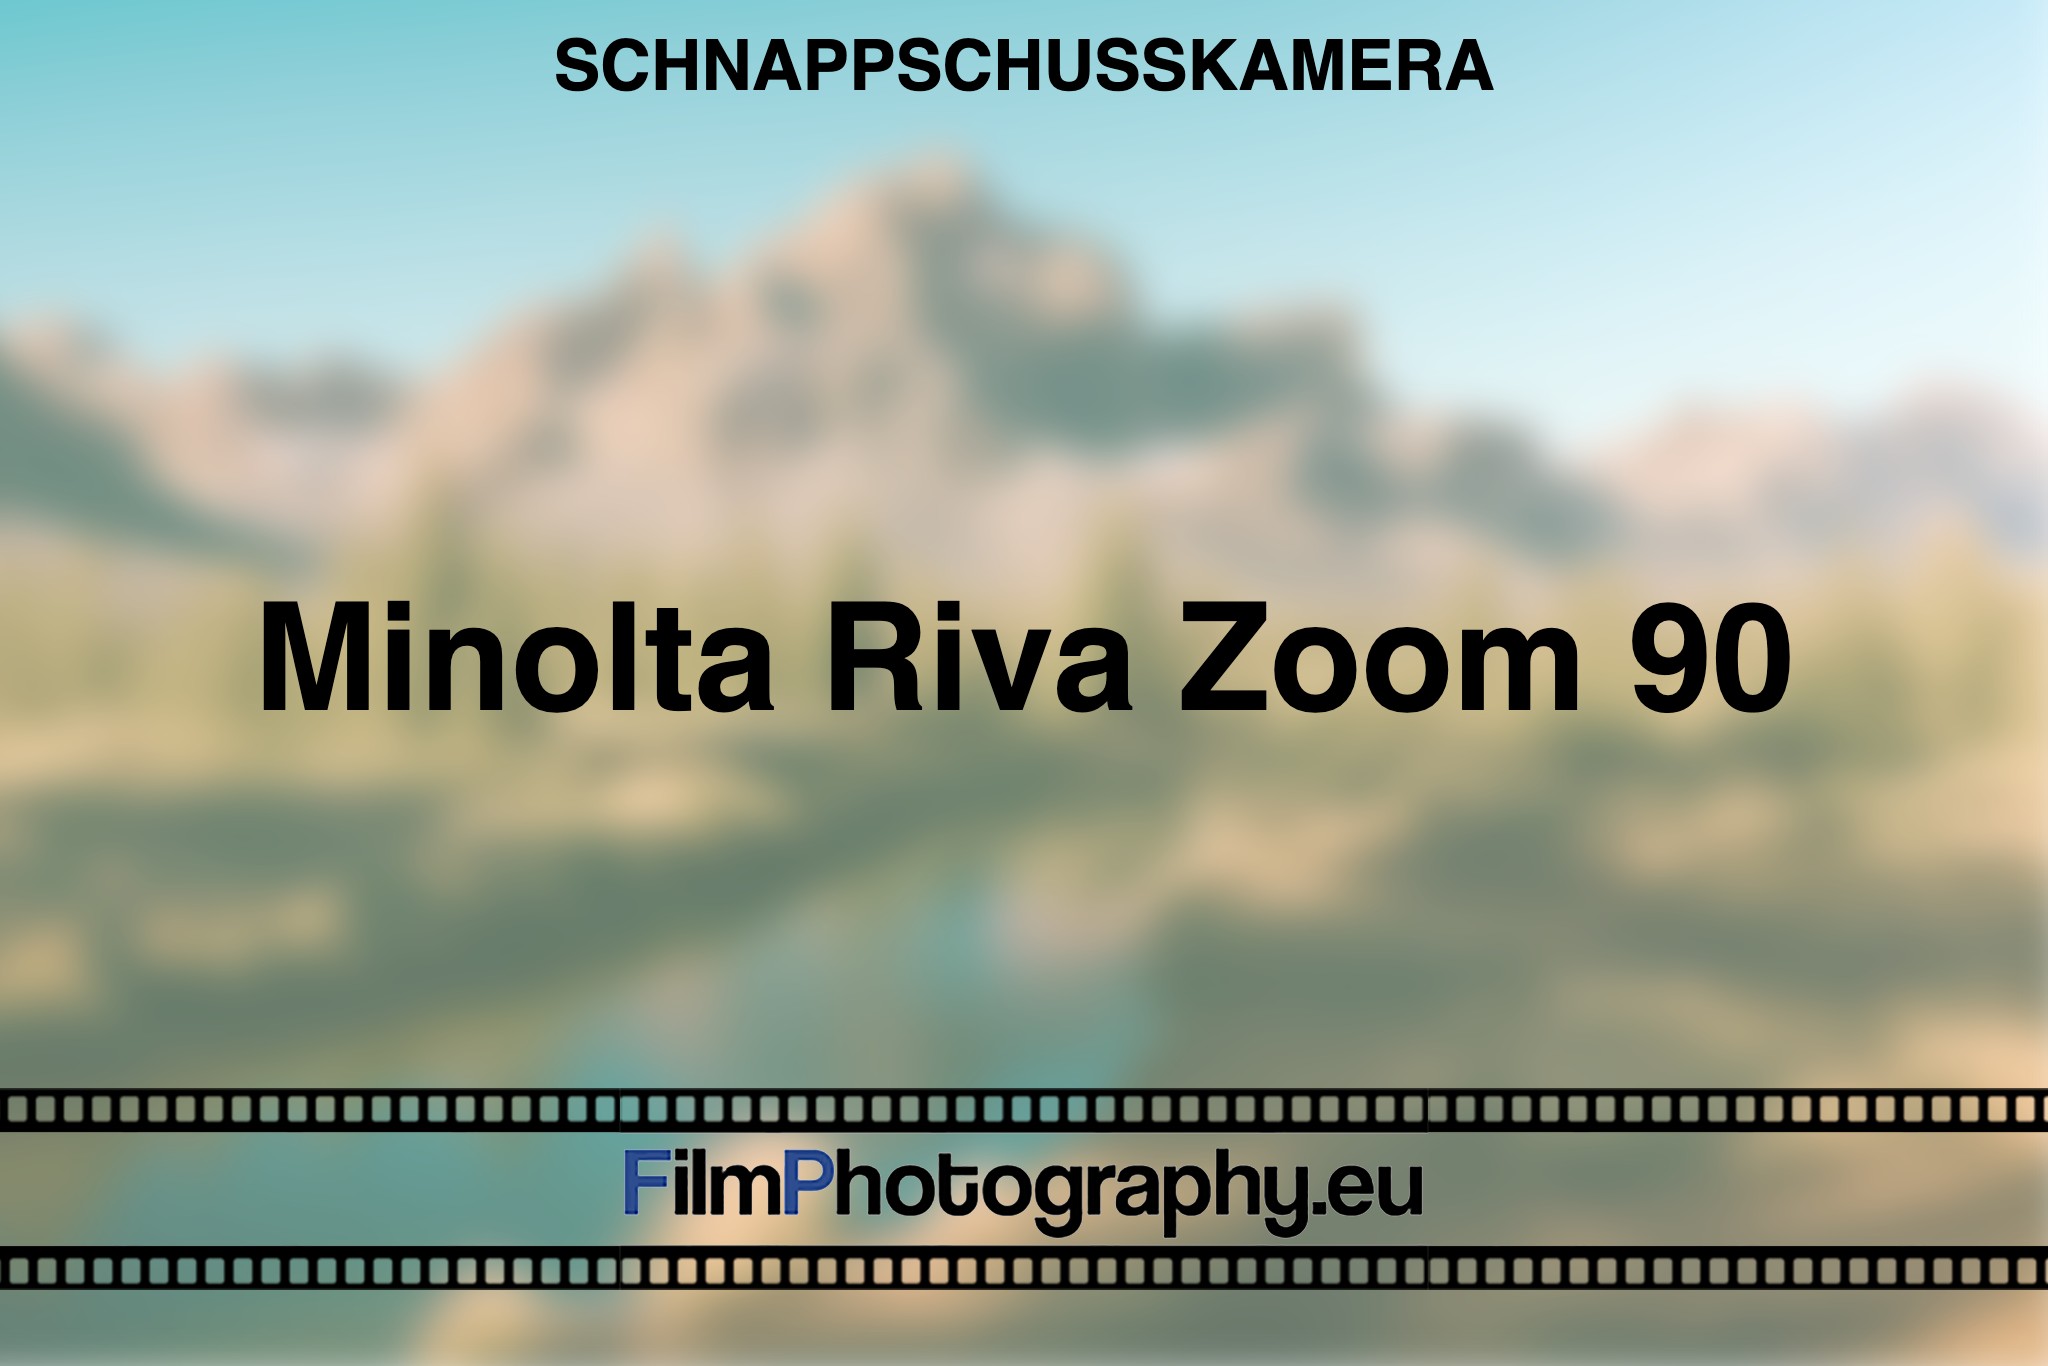 minolta-riva-zoom-90-schnappschusskamera-bnv